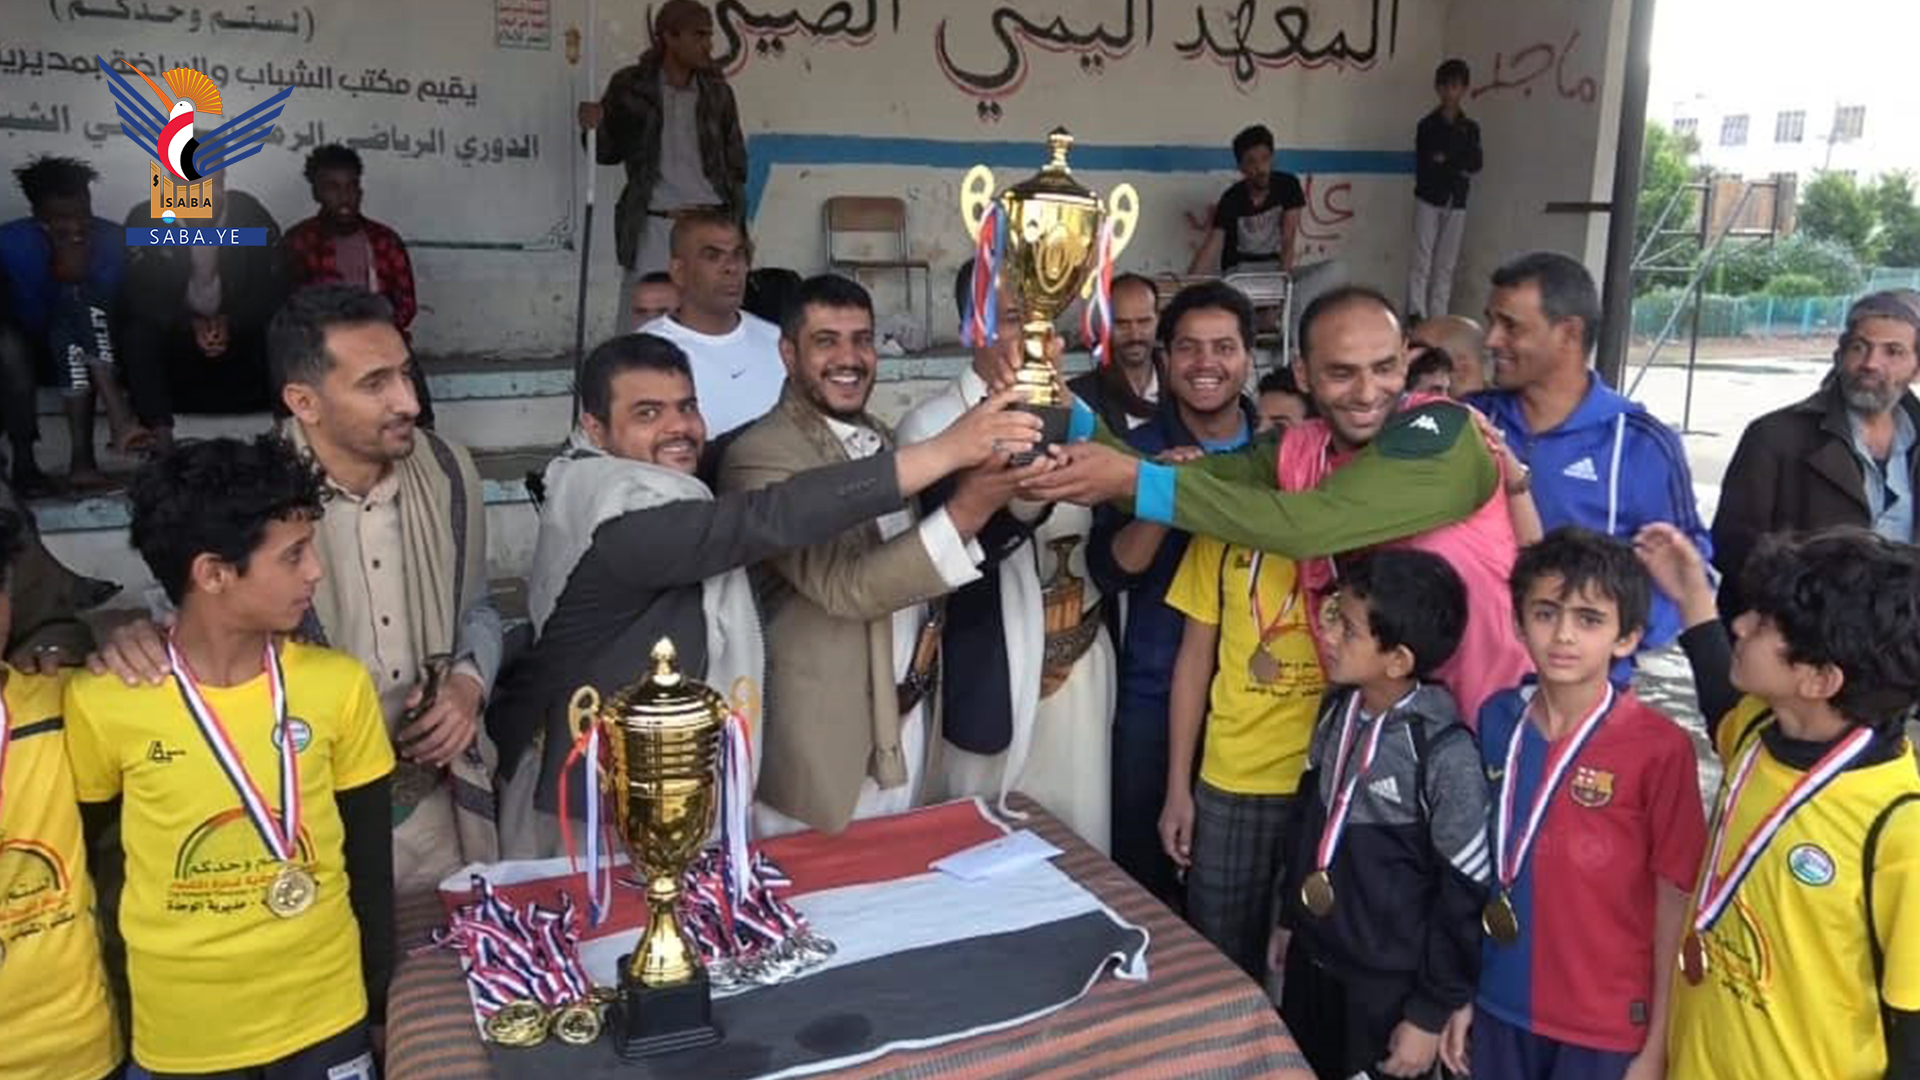 فريق الشهيد أبو حرب يحرز لقب الدوري الرمضاني للقدم في الوحدة بالأمانة